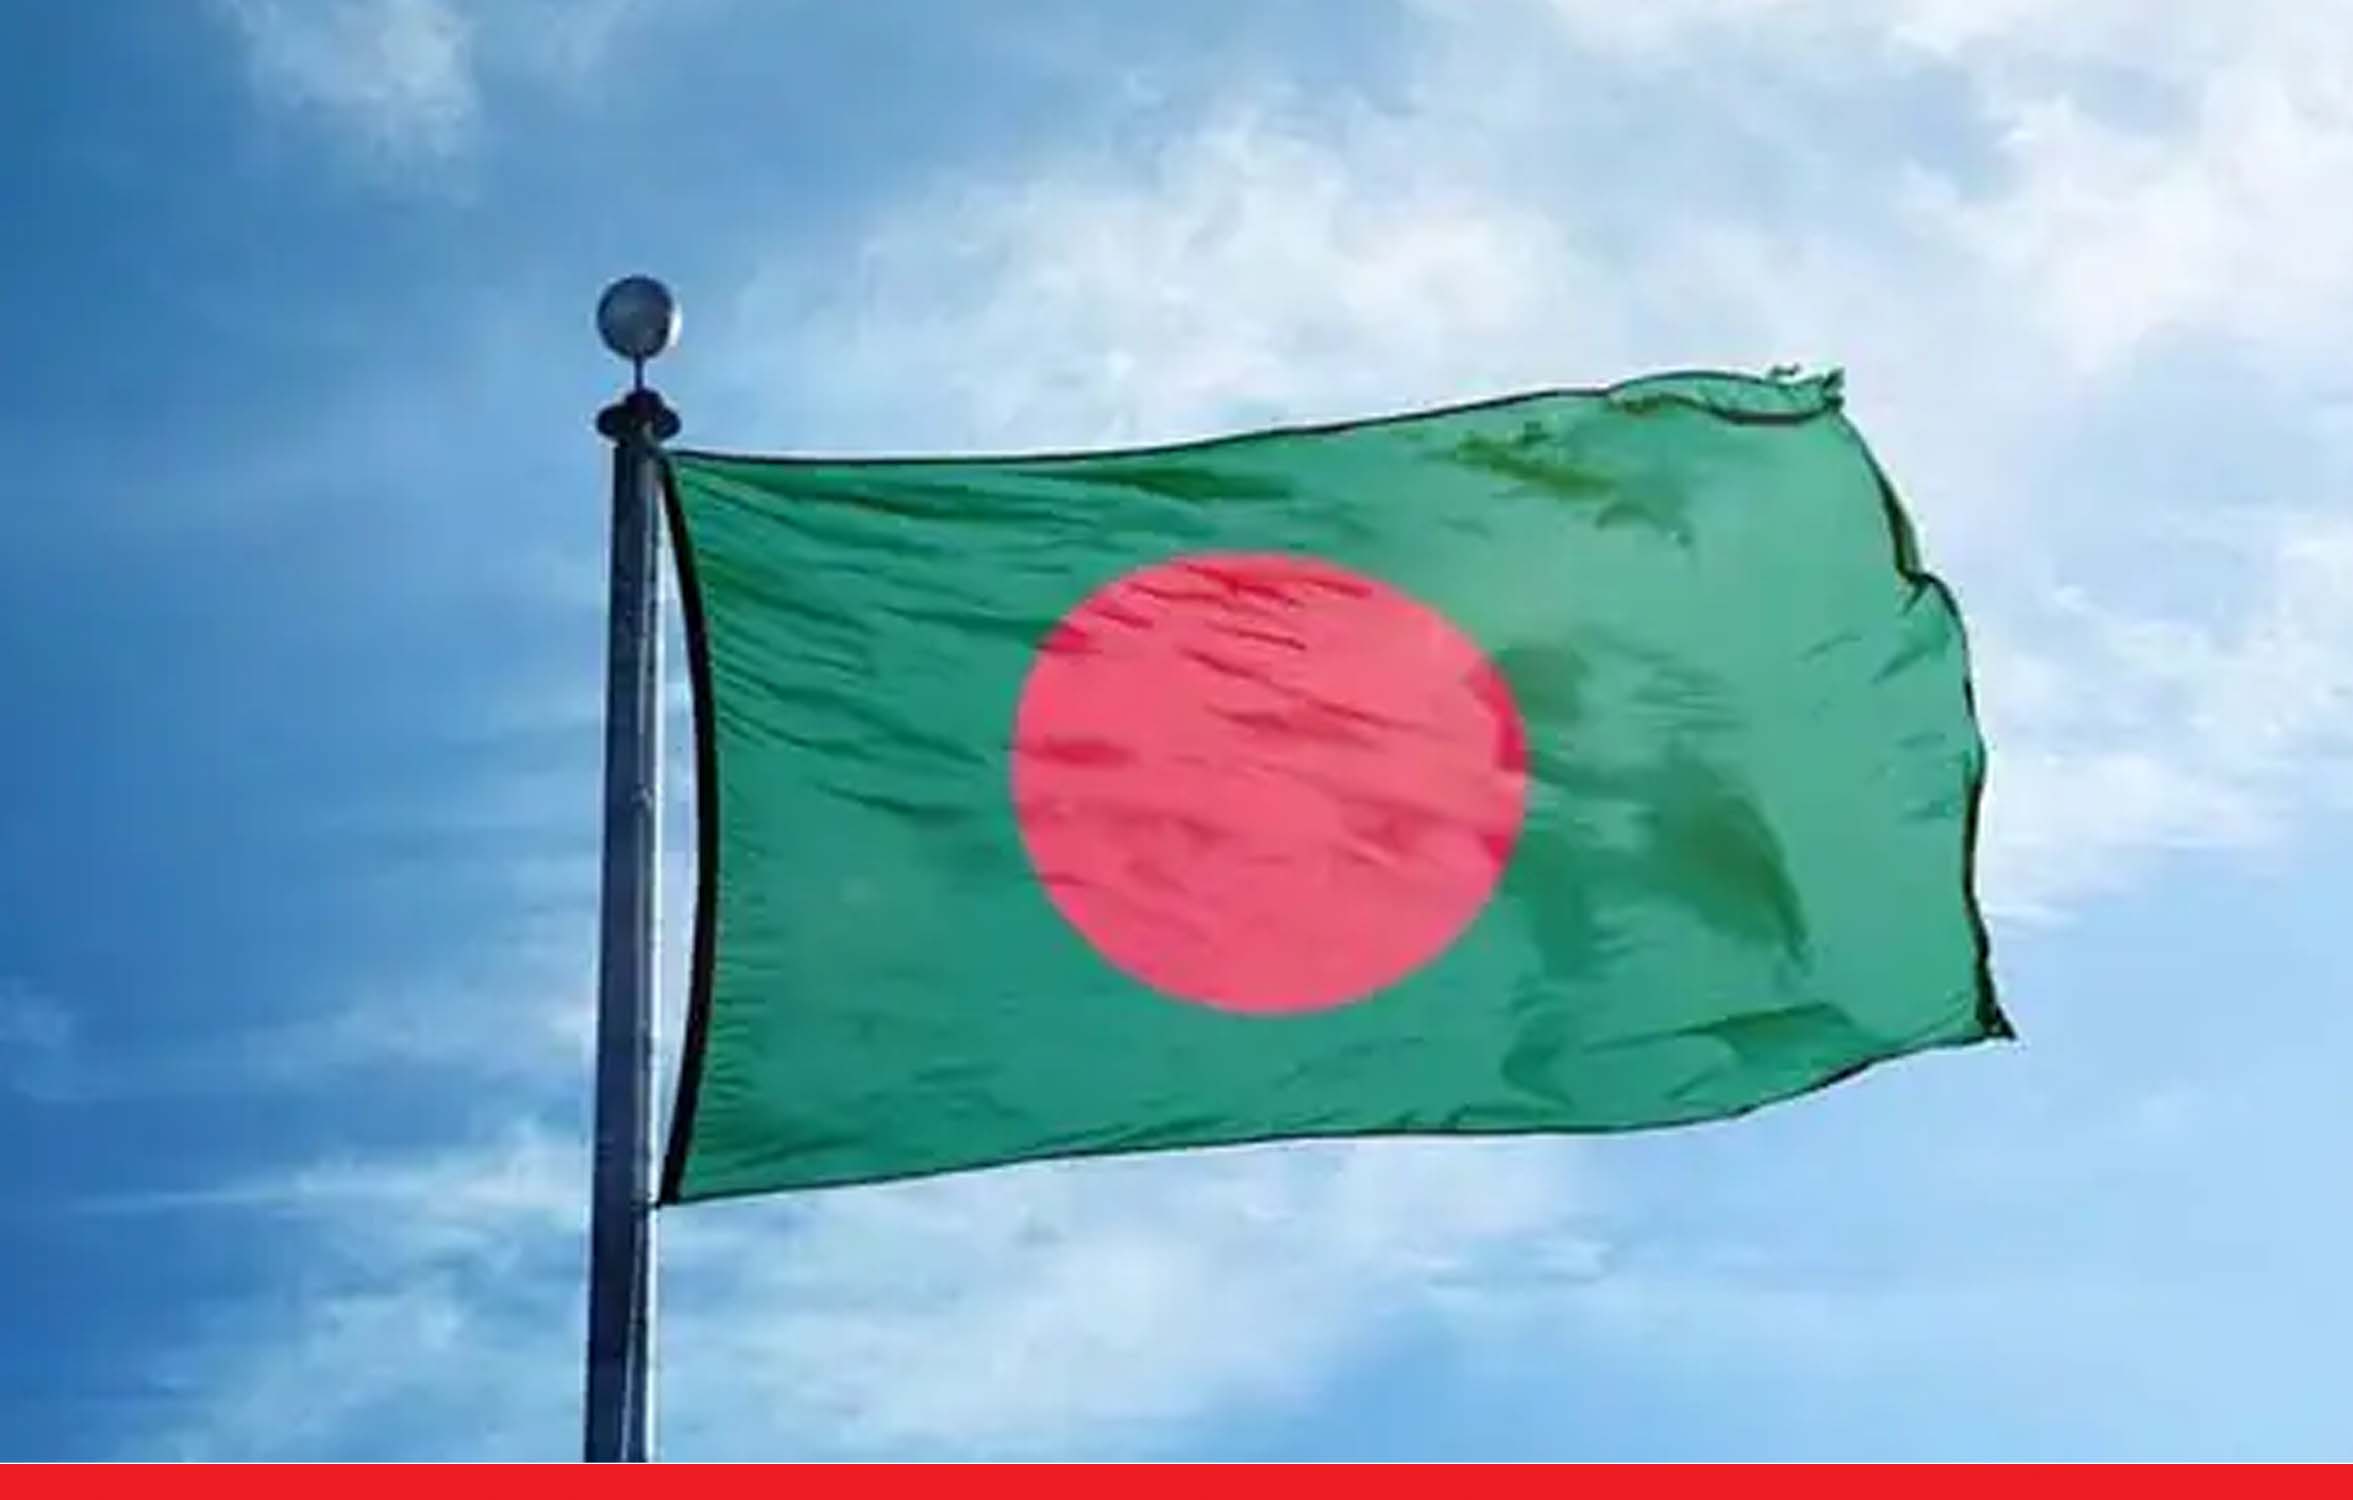 विश्वास भंग से संबद्ध एक मामले में बांग्लादेश के पहले हिंदू चीफ जस्टिस को 11 साल की जेल